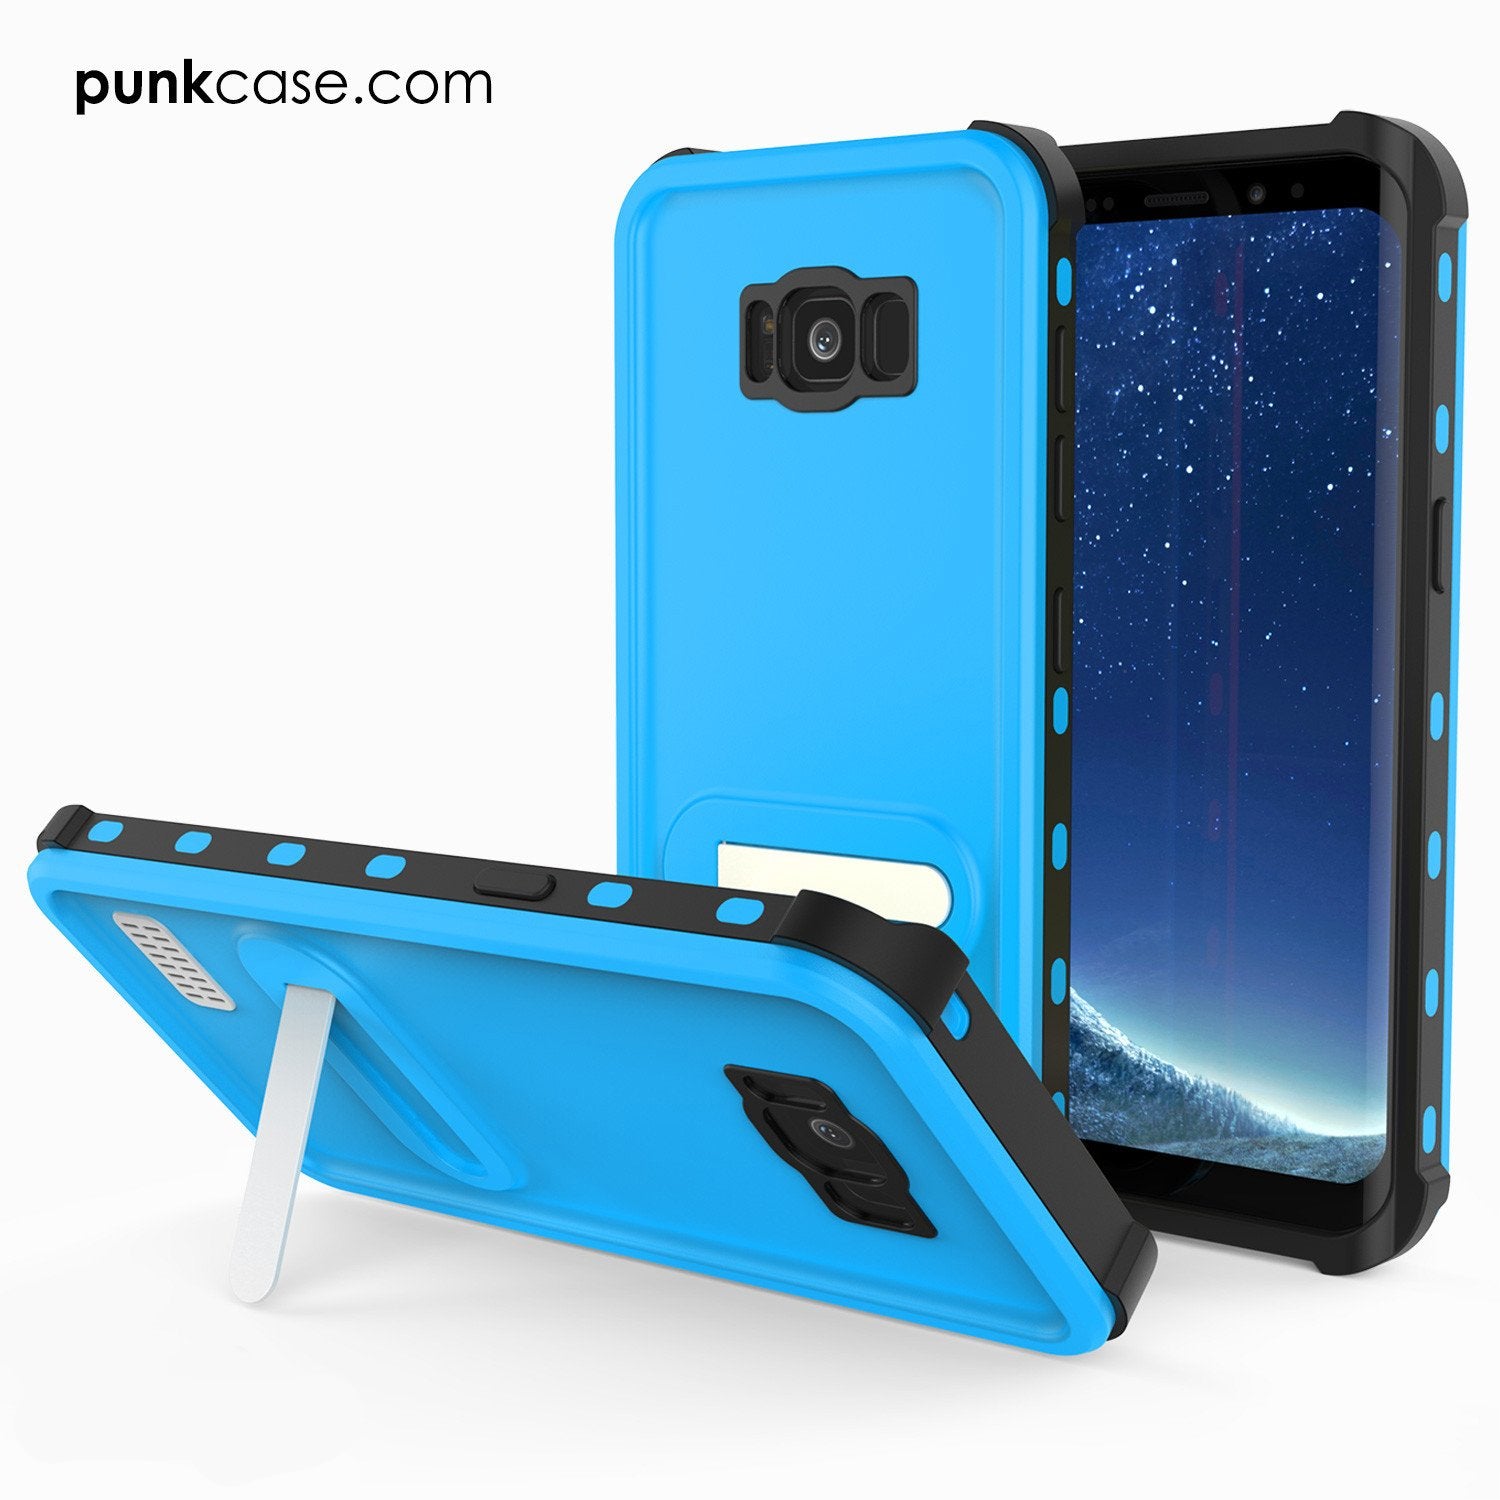 Galaxy S8 Punkcase KickStud Series W/Built-In Kickstand, Light Blue